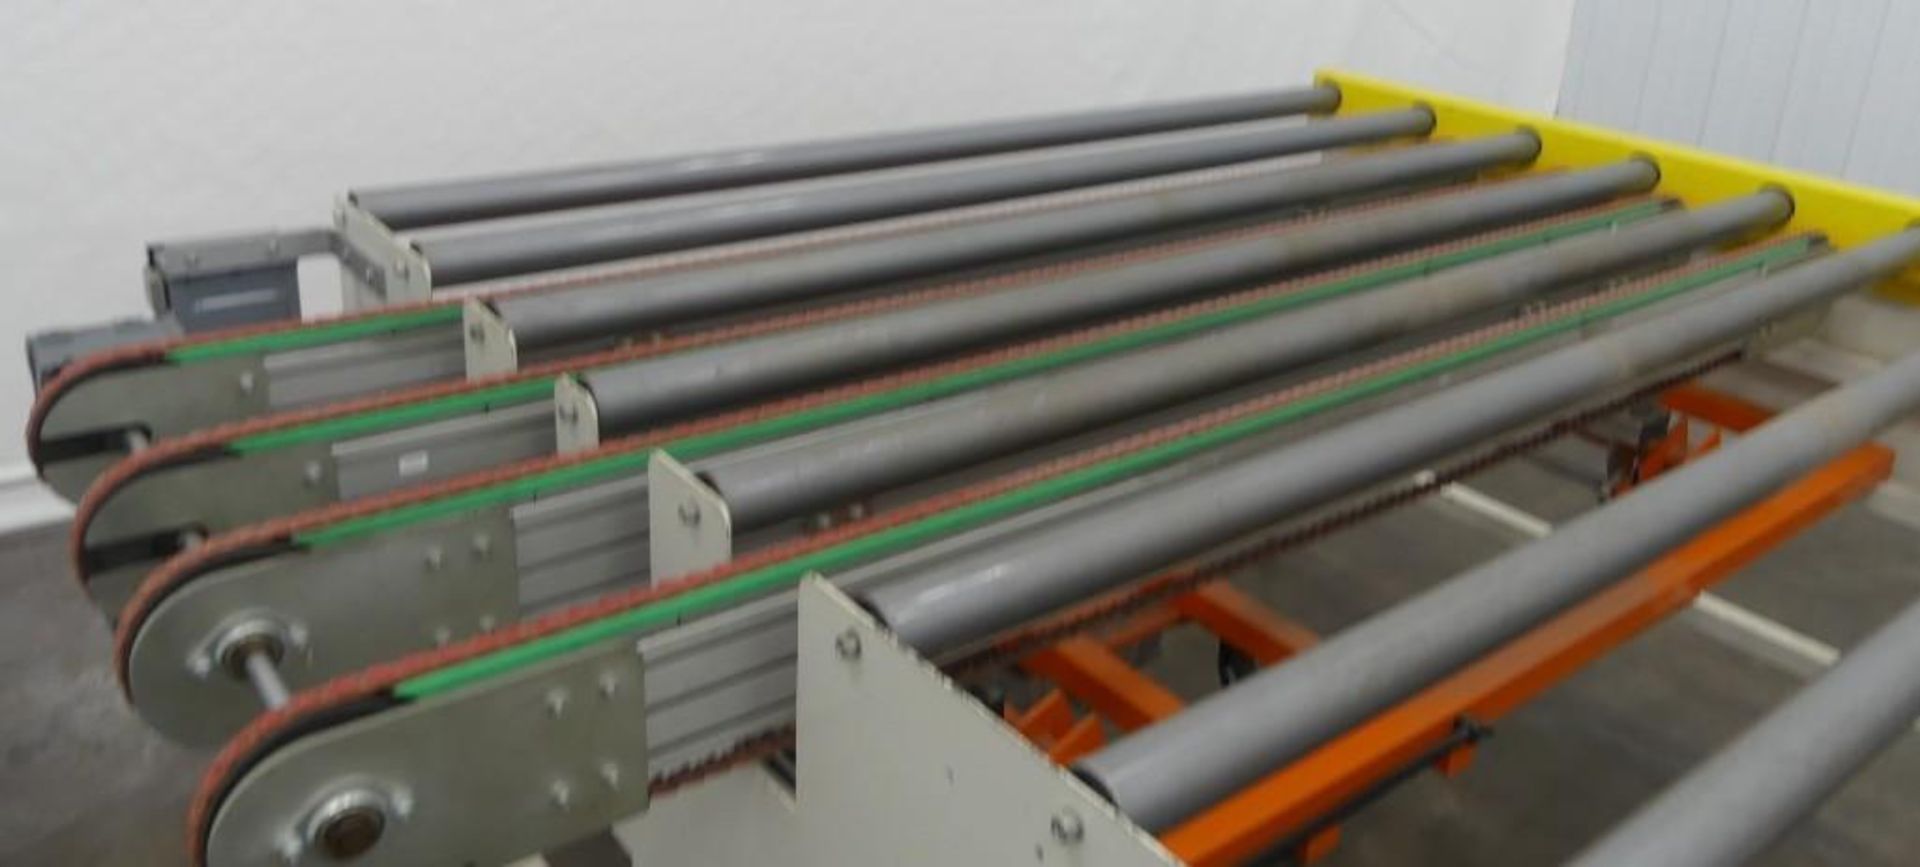 10' long x 7' wide Roller Conveyor - Image 4 of 11